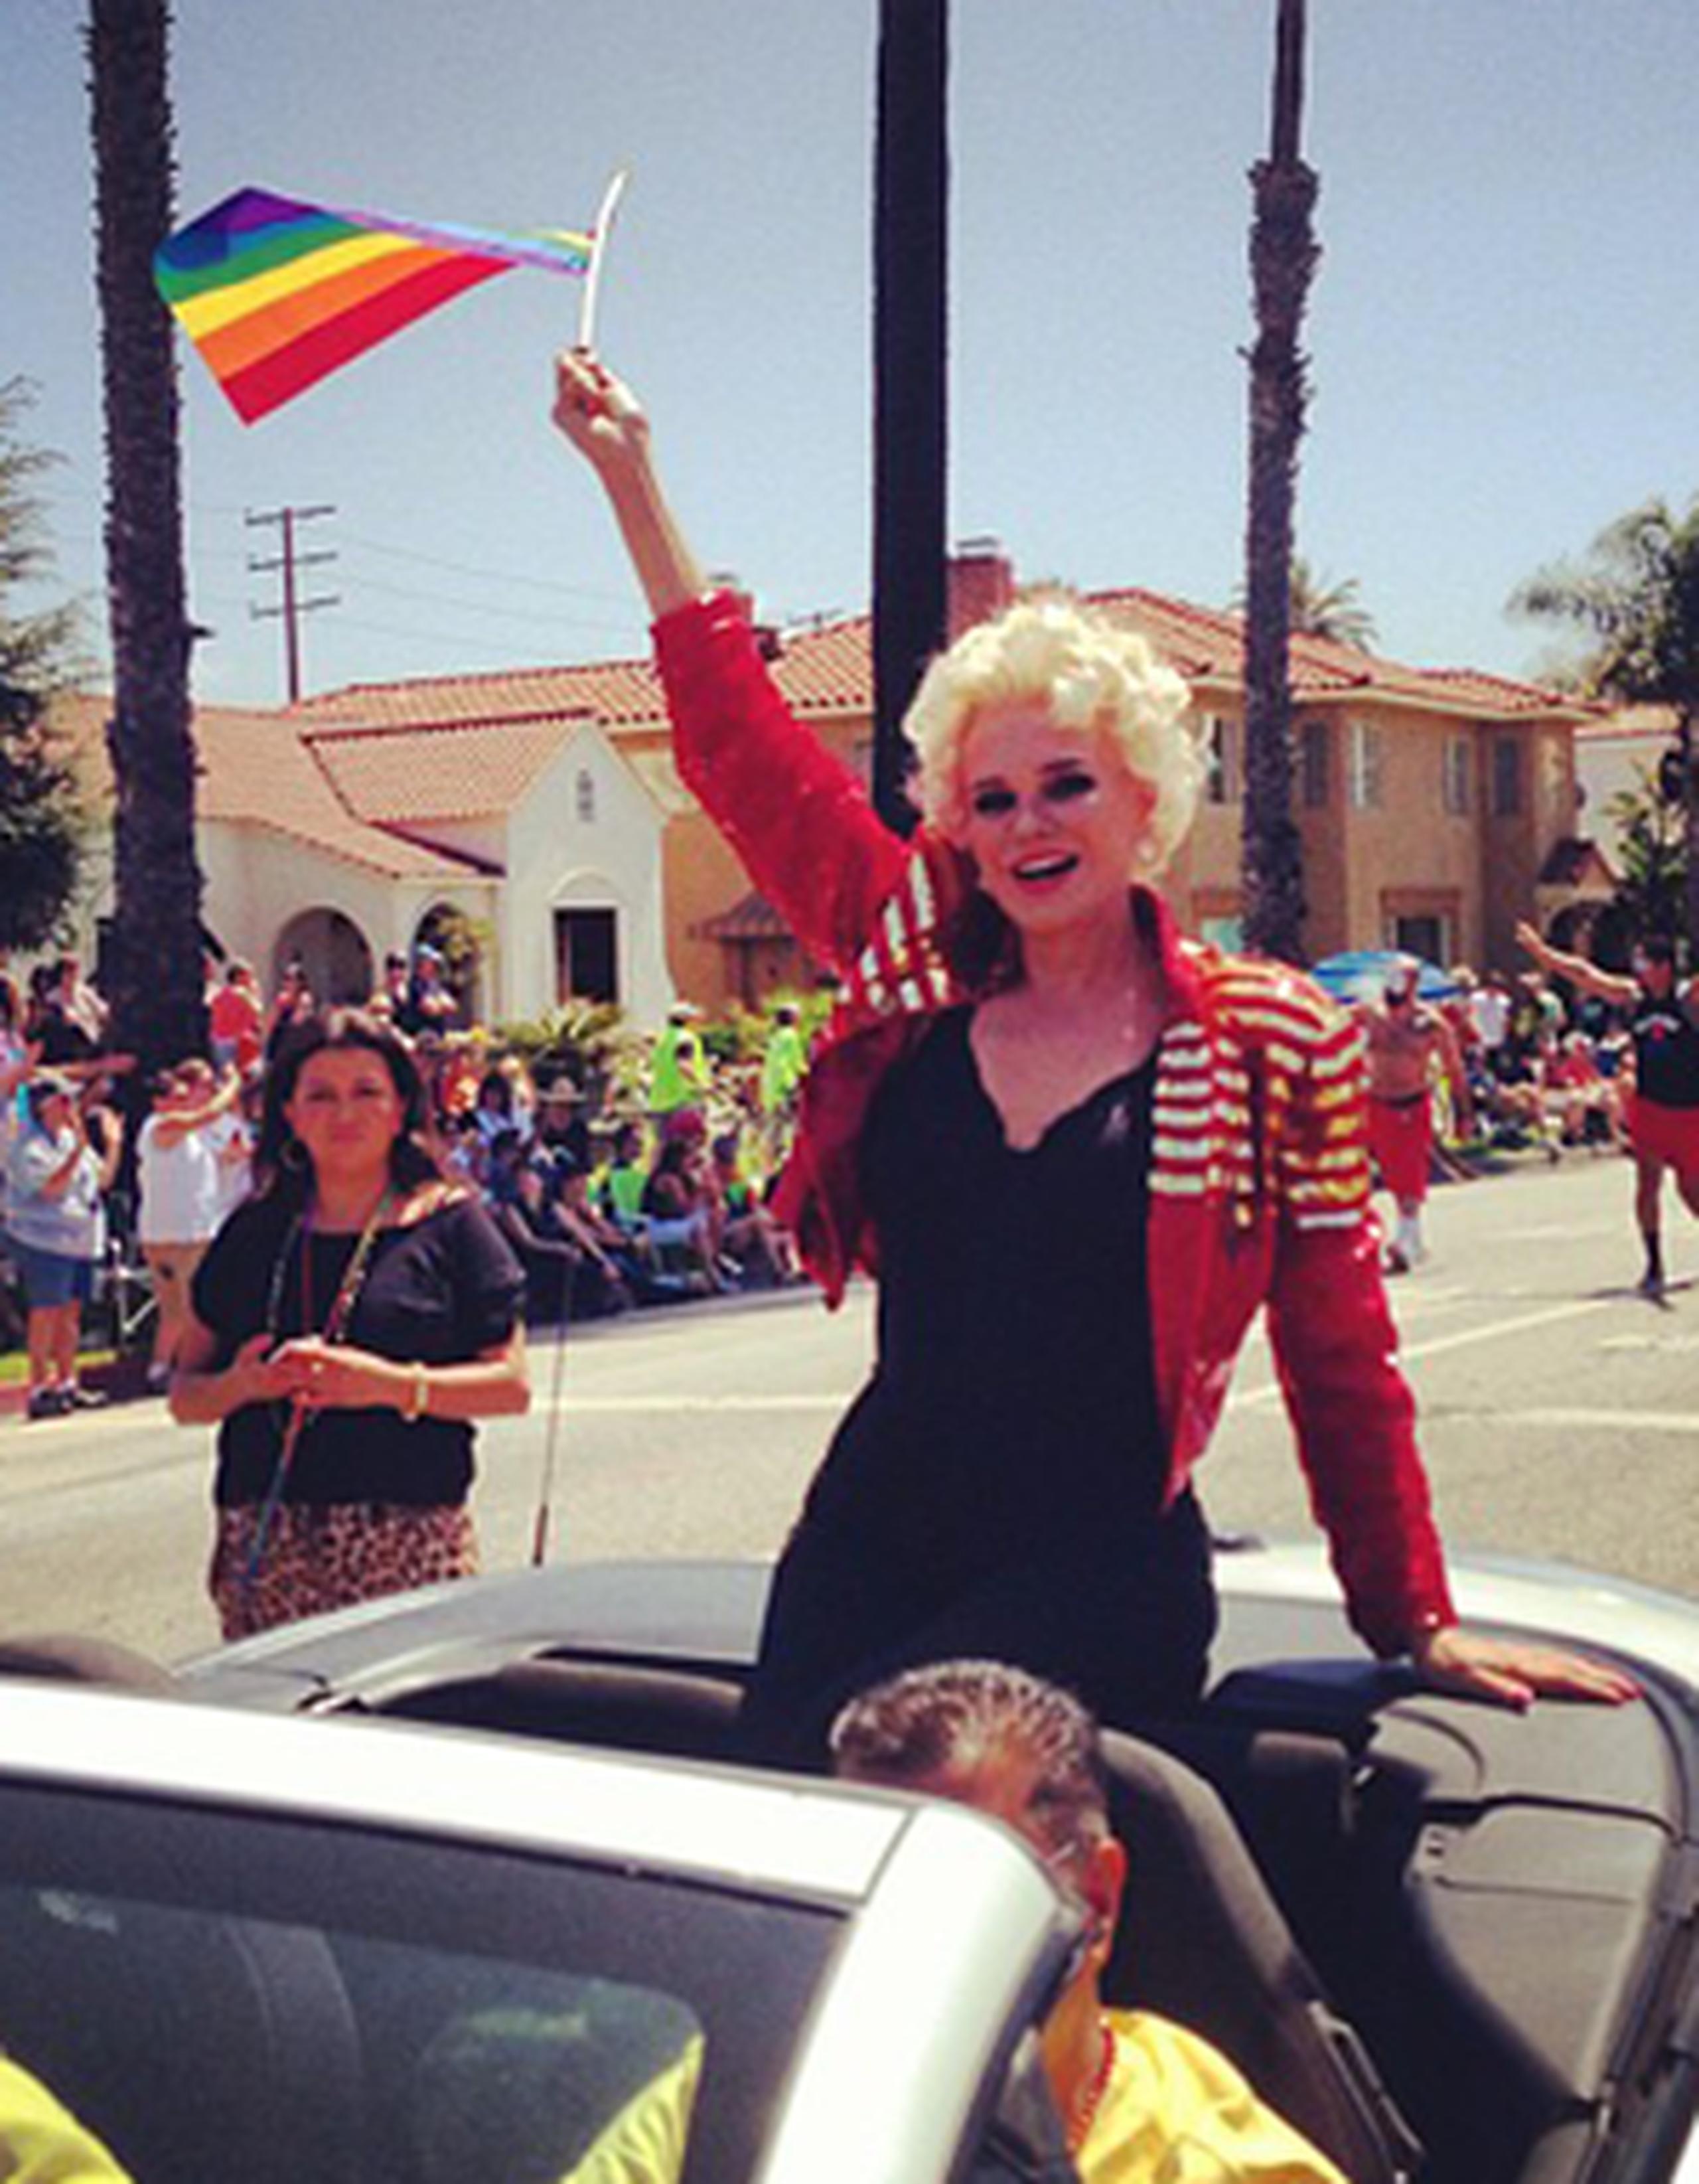 Durante el festival la nombraron la reina de la comunidad LGBTT de Long Beach, California. (Suministrada)